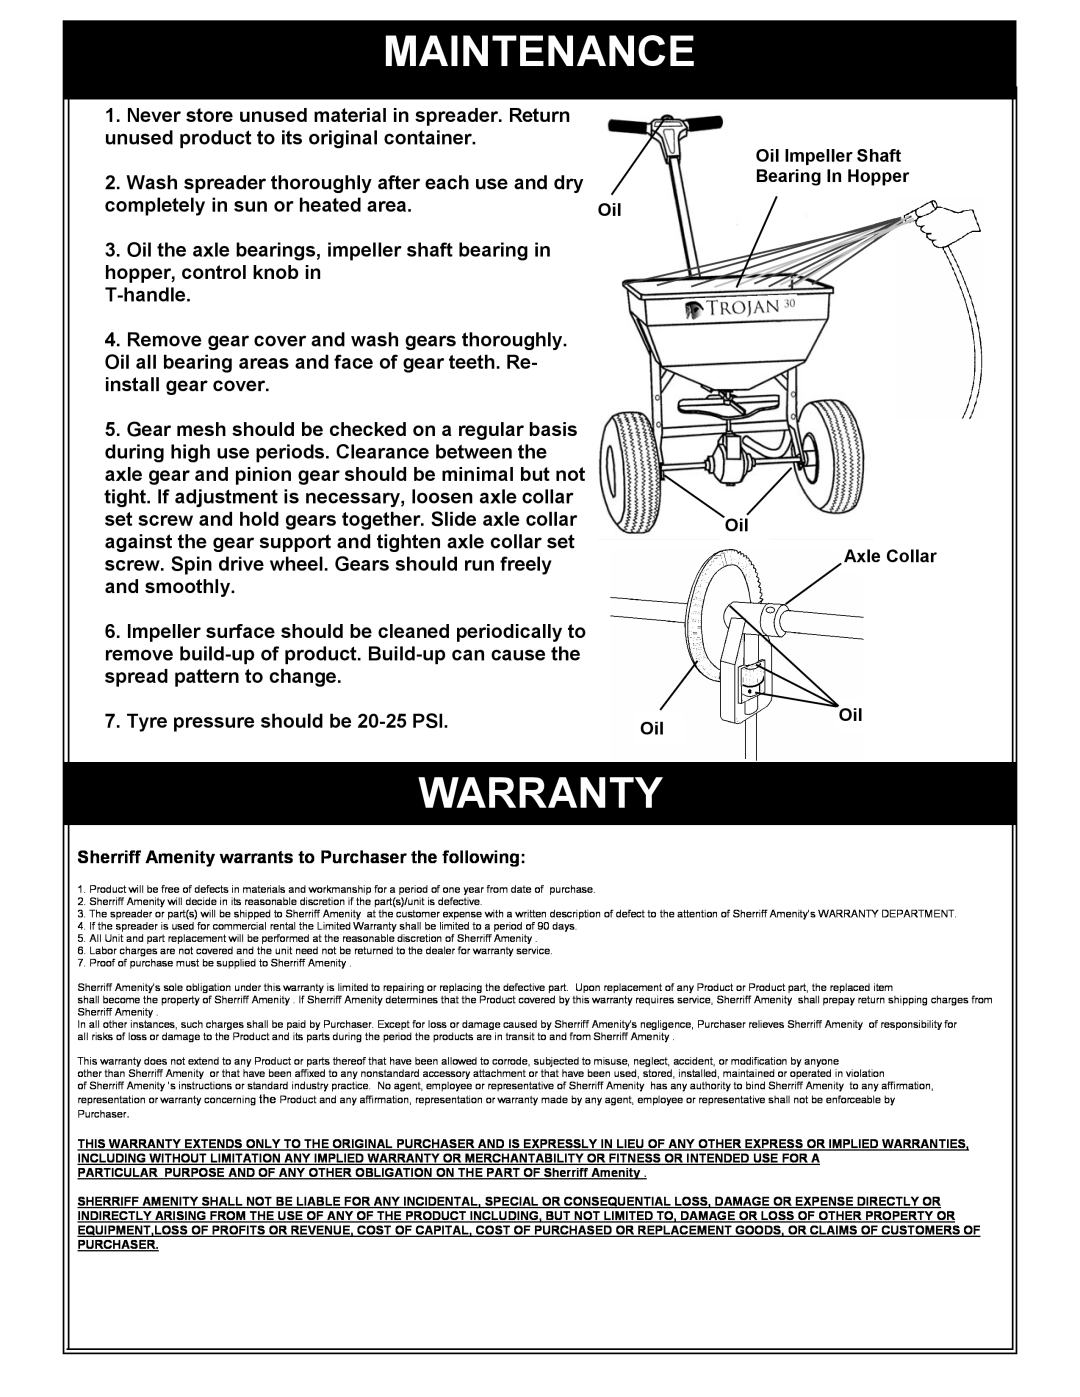 Trojan 30 owner manual Maintenance, Warranty 